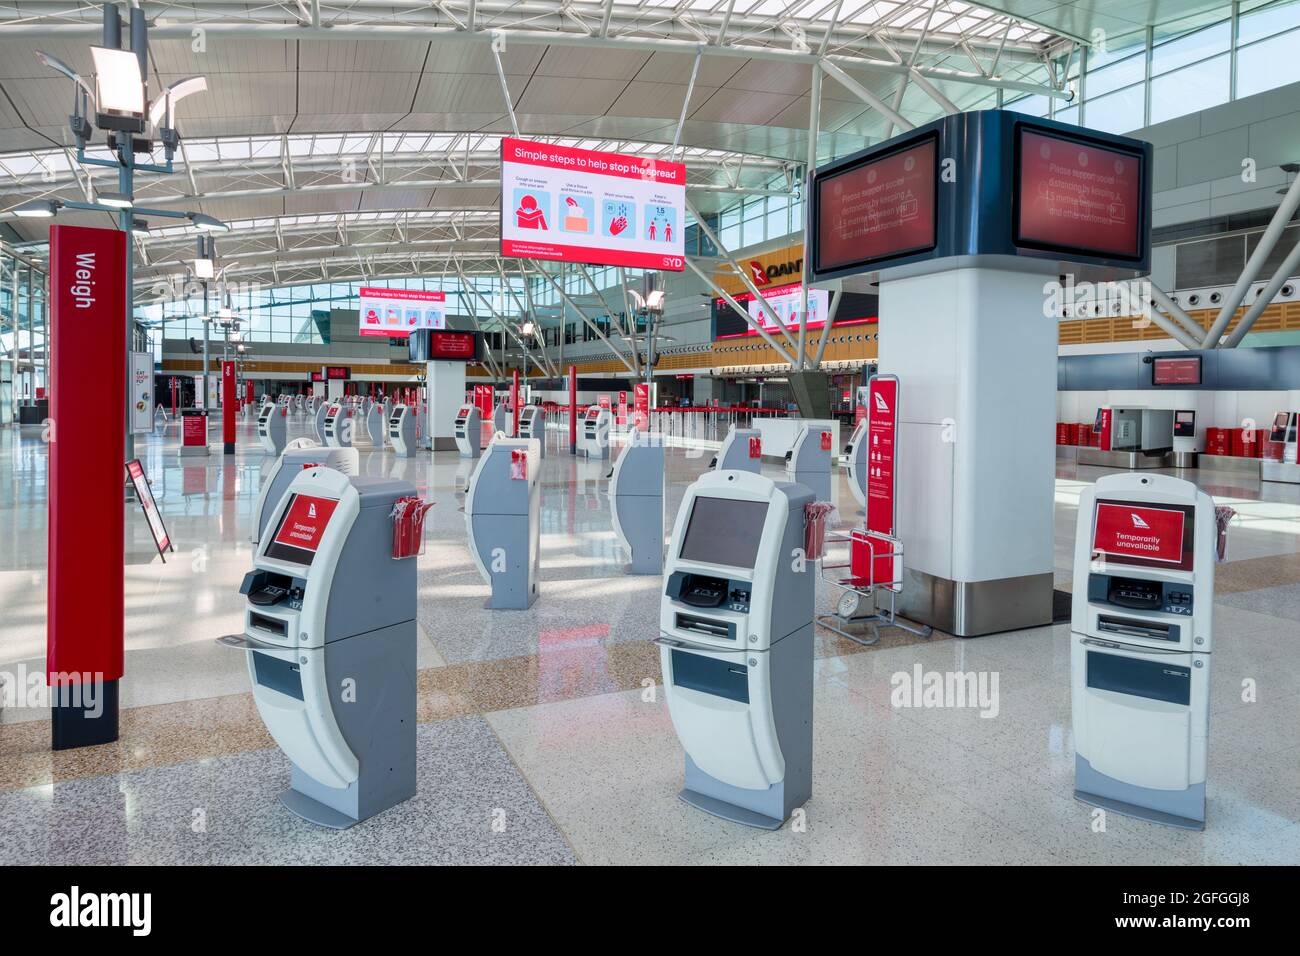 Mentre Sydney, Australia, continua il suo lungo blocco del coronavirus, l'aeroporto di Sydney sembra abbandonato a causa dei confini chiusi e delle restrizioni di viaggio. Foto Stock